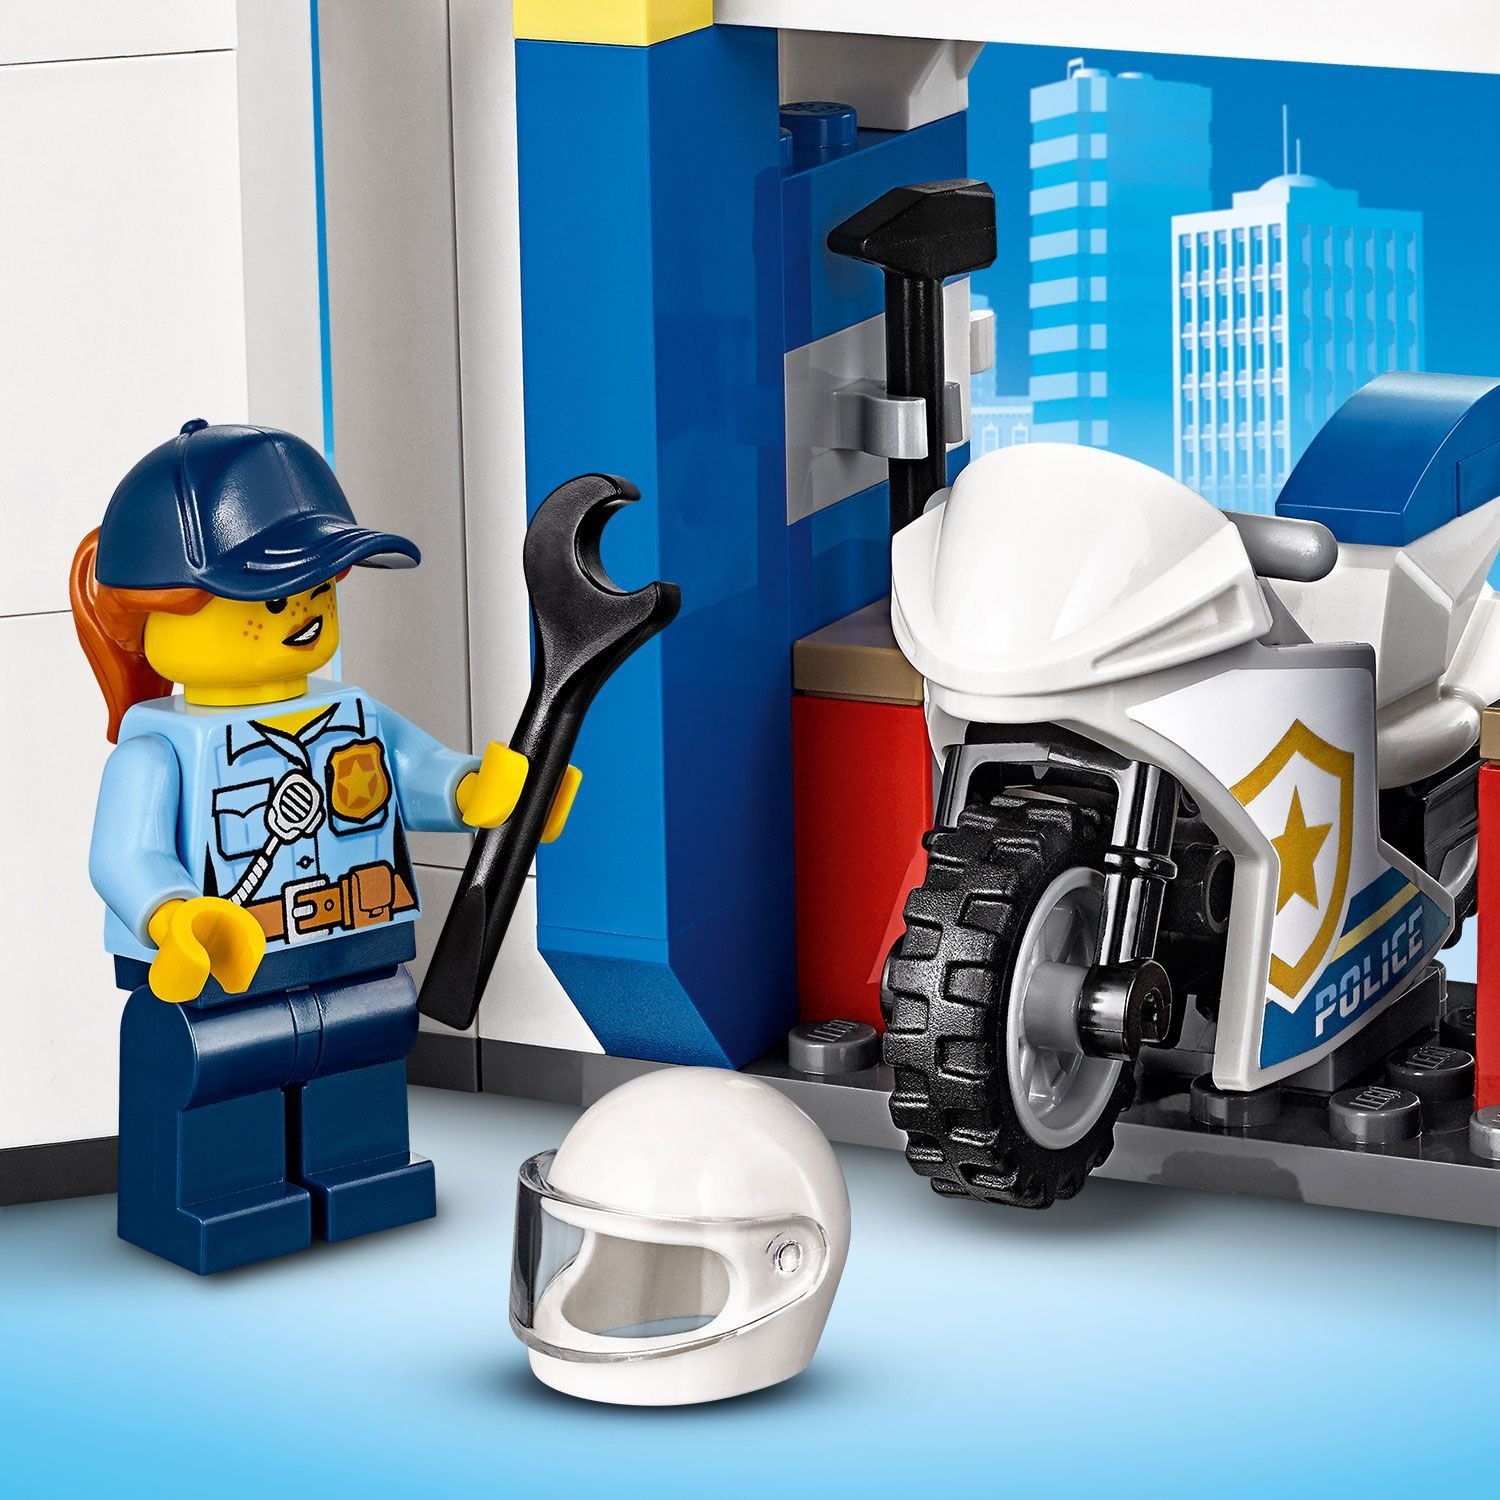 Lego City 60246 Полицейский участок